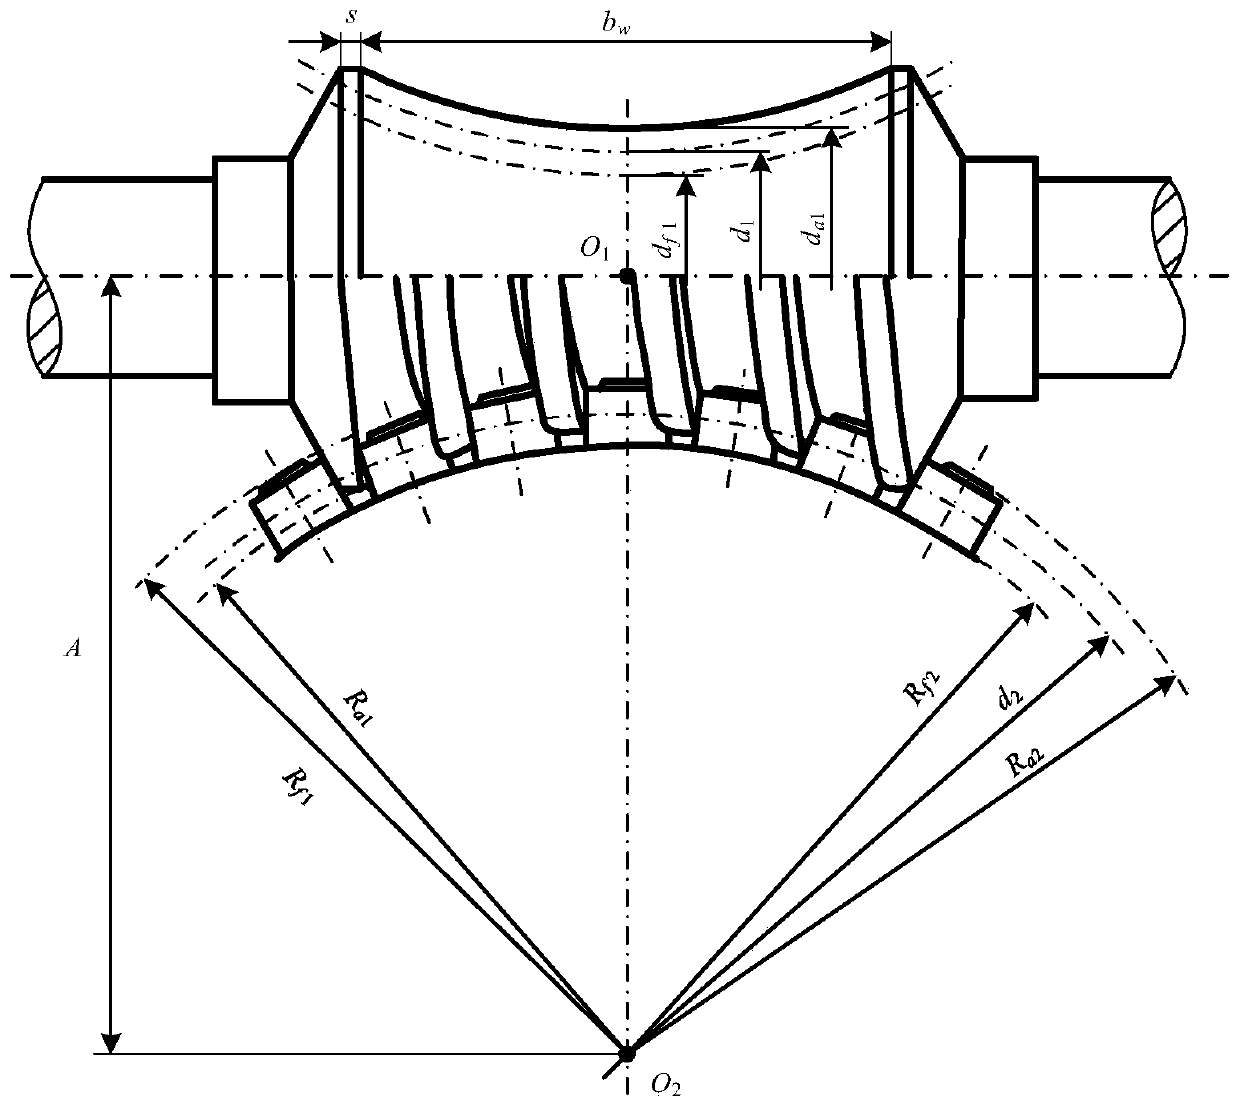 A time-varying meshing stiffness analysis method for a single-roller enveloping toroidal worm pair